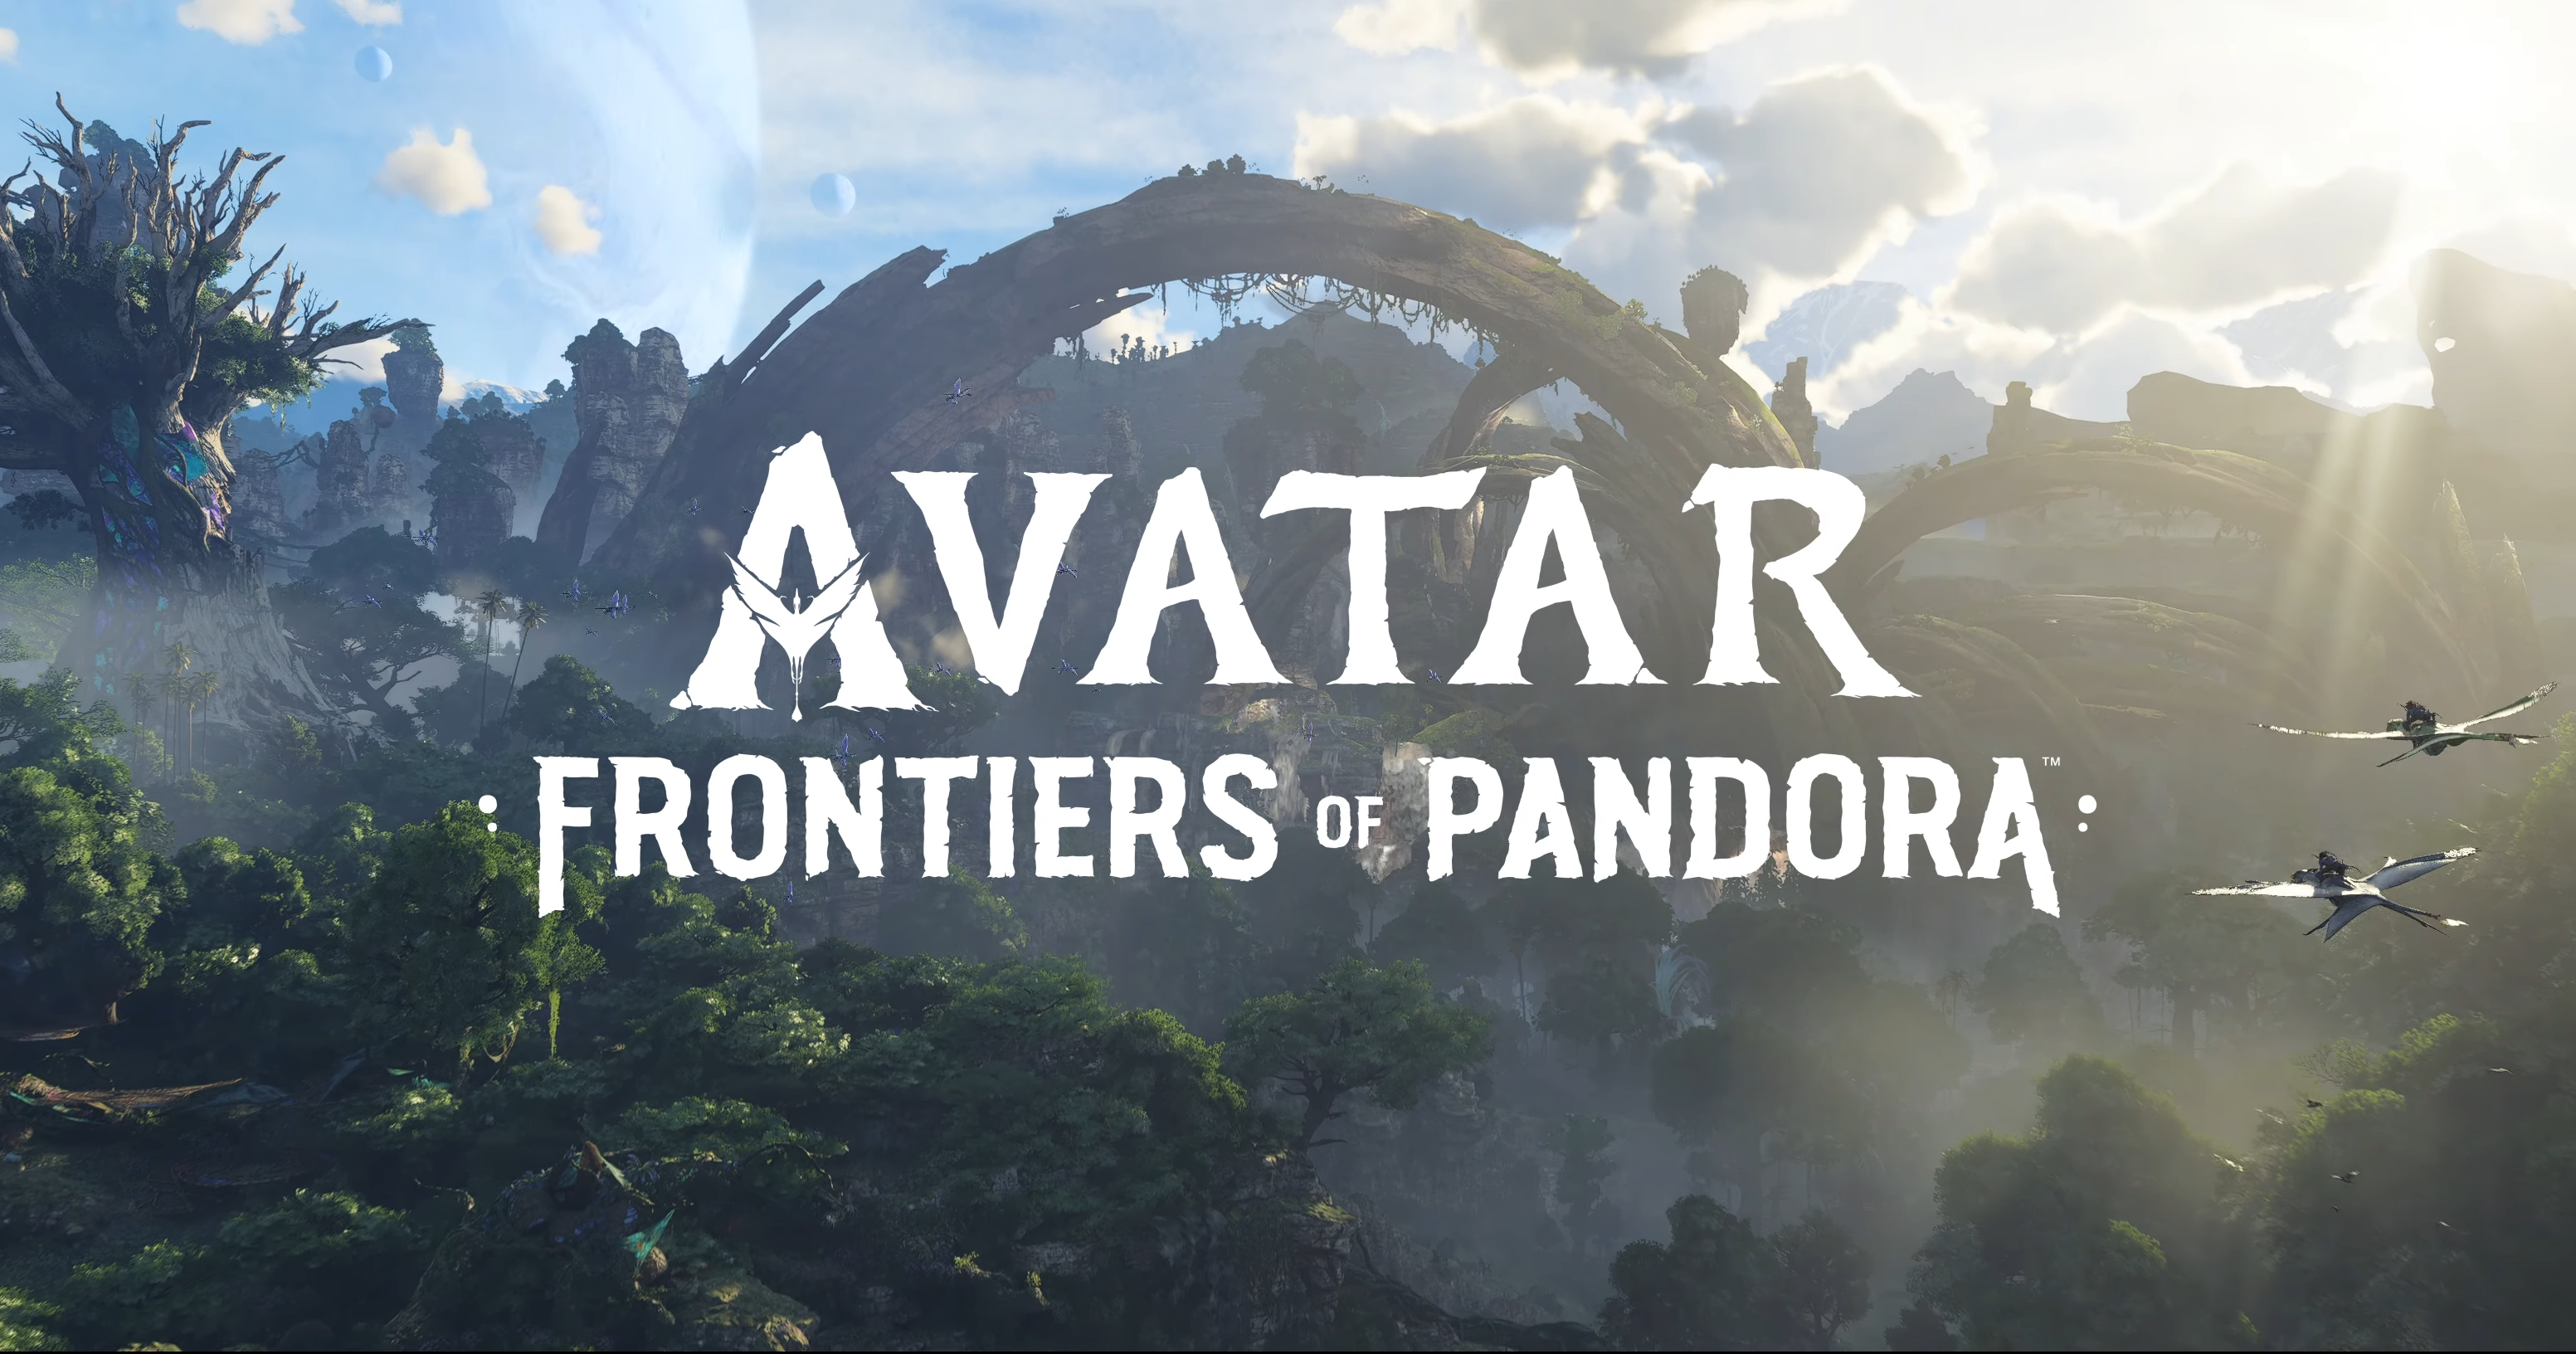 Avatar Wiki: Wiki của Avatar là một nguồn tài liệu lớn về vũ trụ của Avatar. Trong đó bao gồm công nghệ và các bộ tộc sinh sống trên hành tinh Pandora. Xem hình ảnh để khám phá thế giới tuyệt vời này.